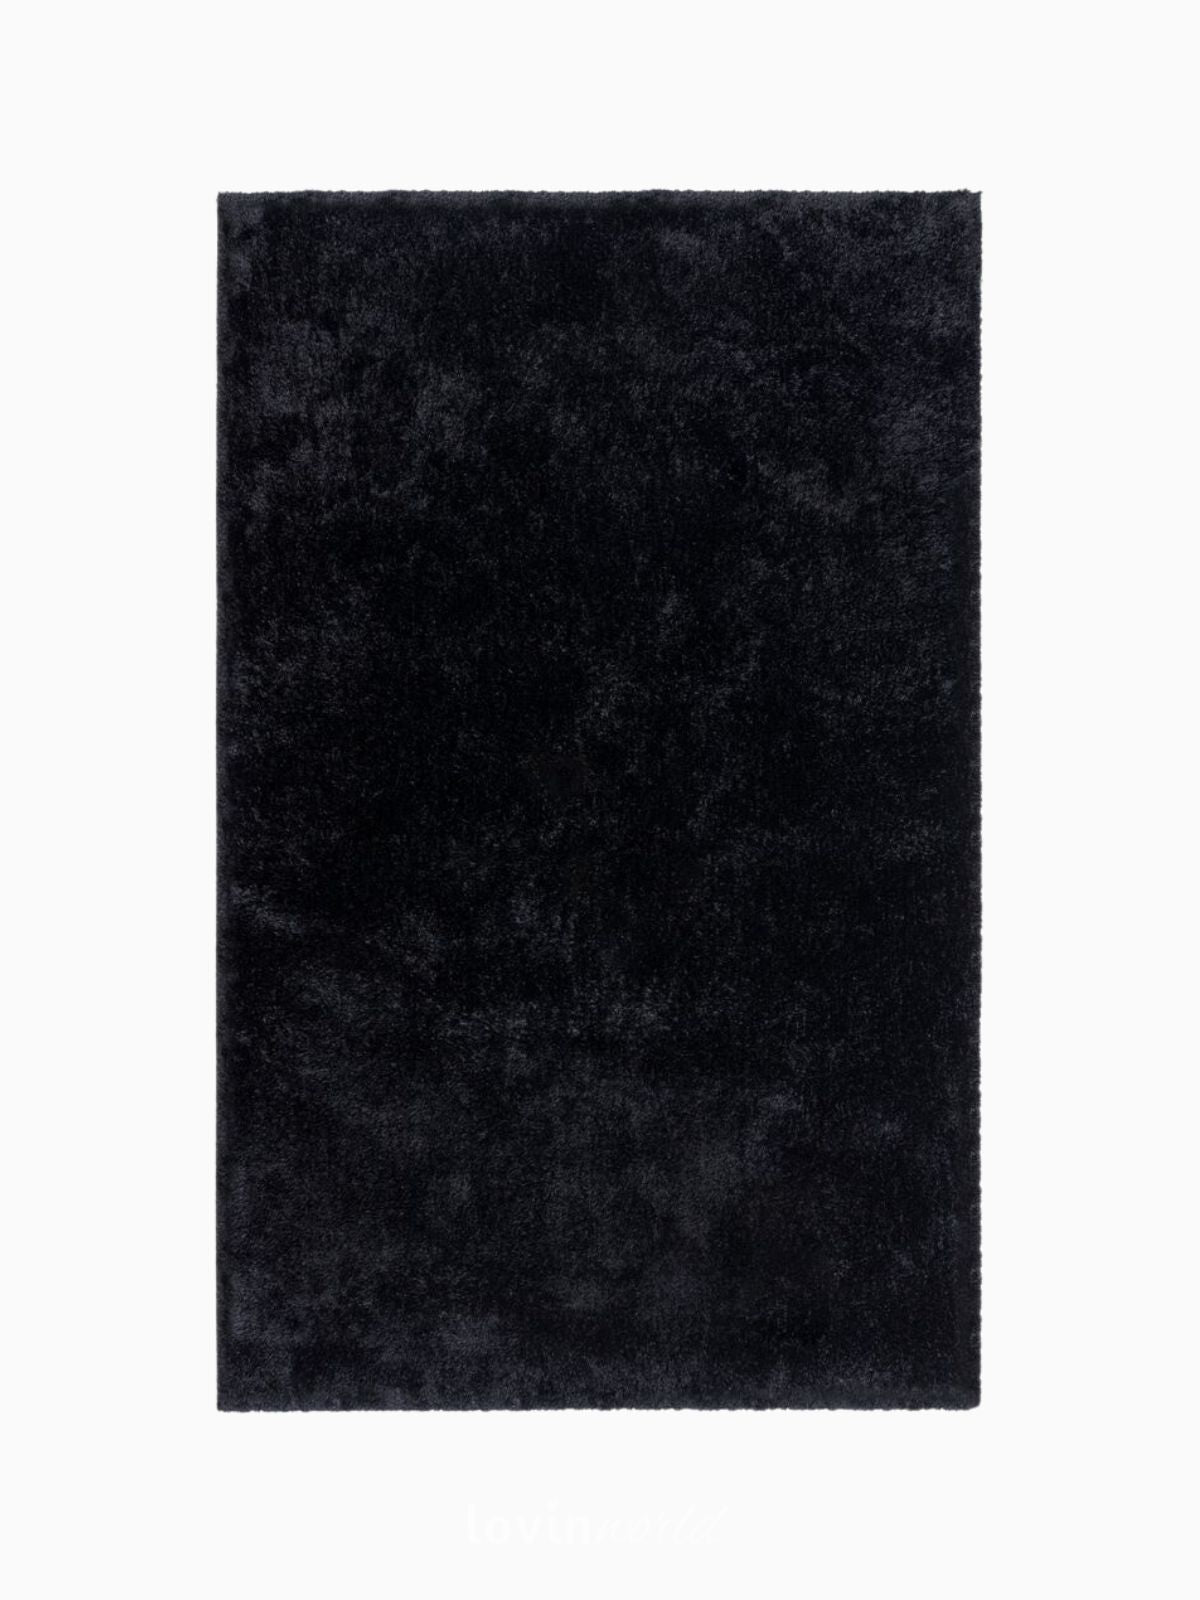 Tappeto shaggy Velvet in poliestere, colore nero-1